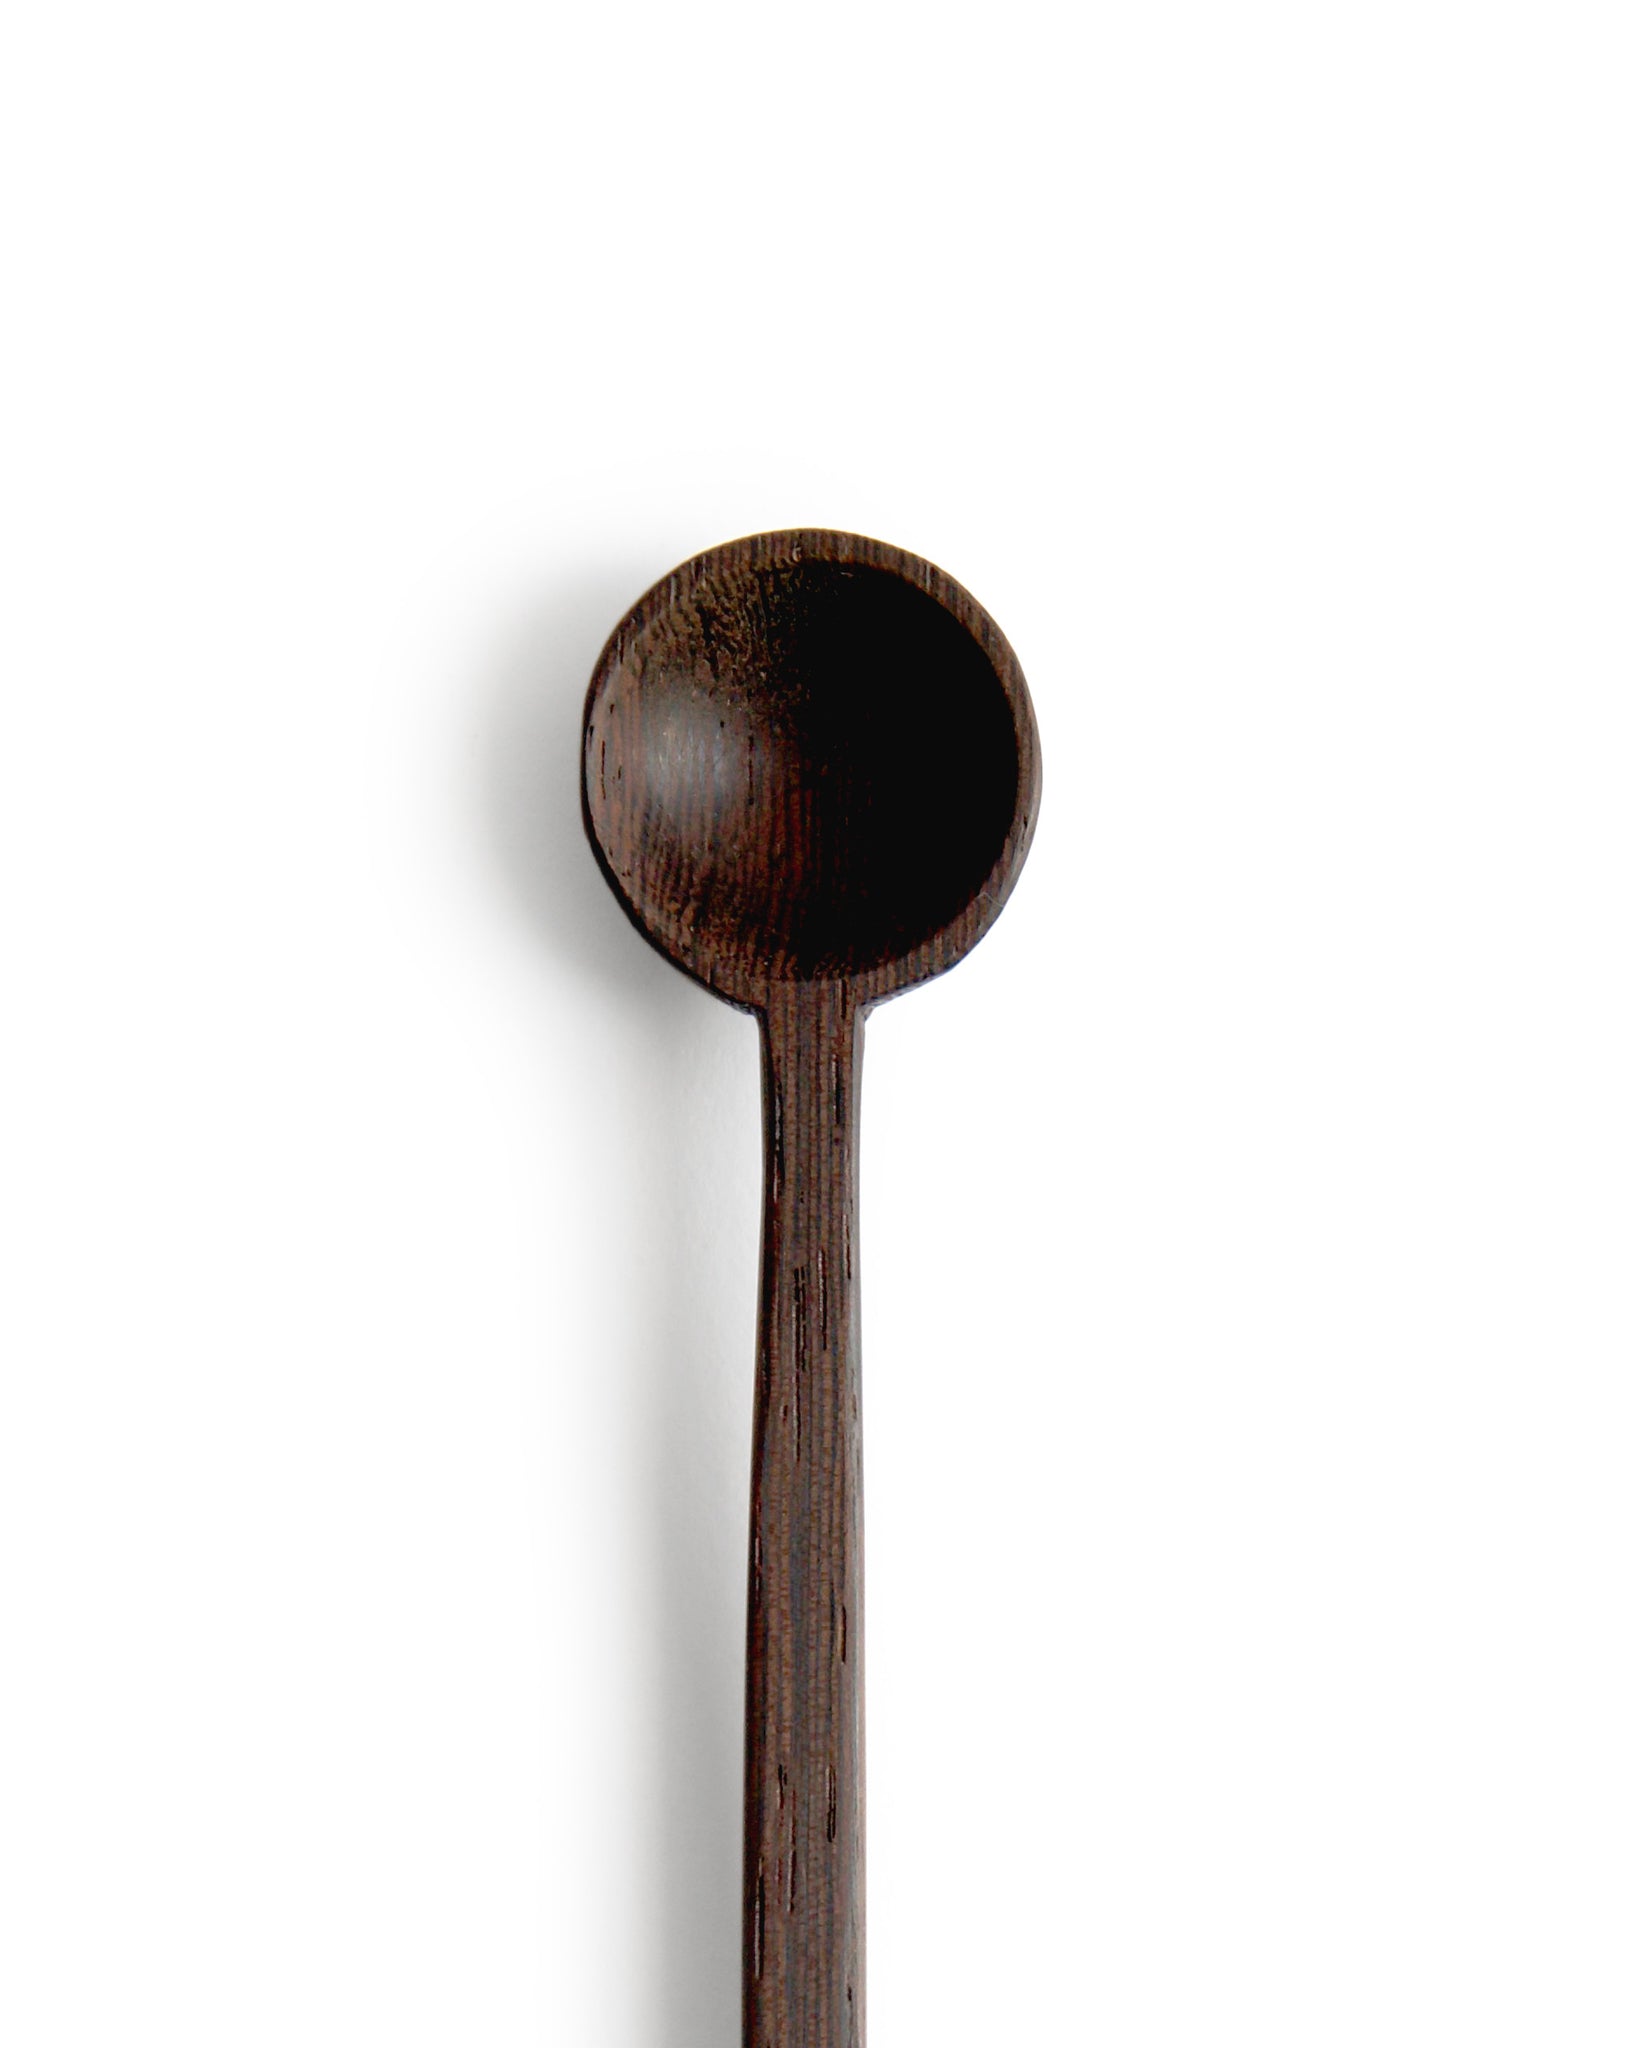 Tagaya Wood Spoon